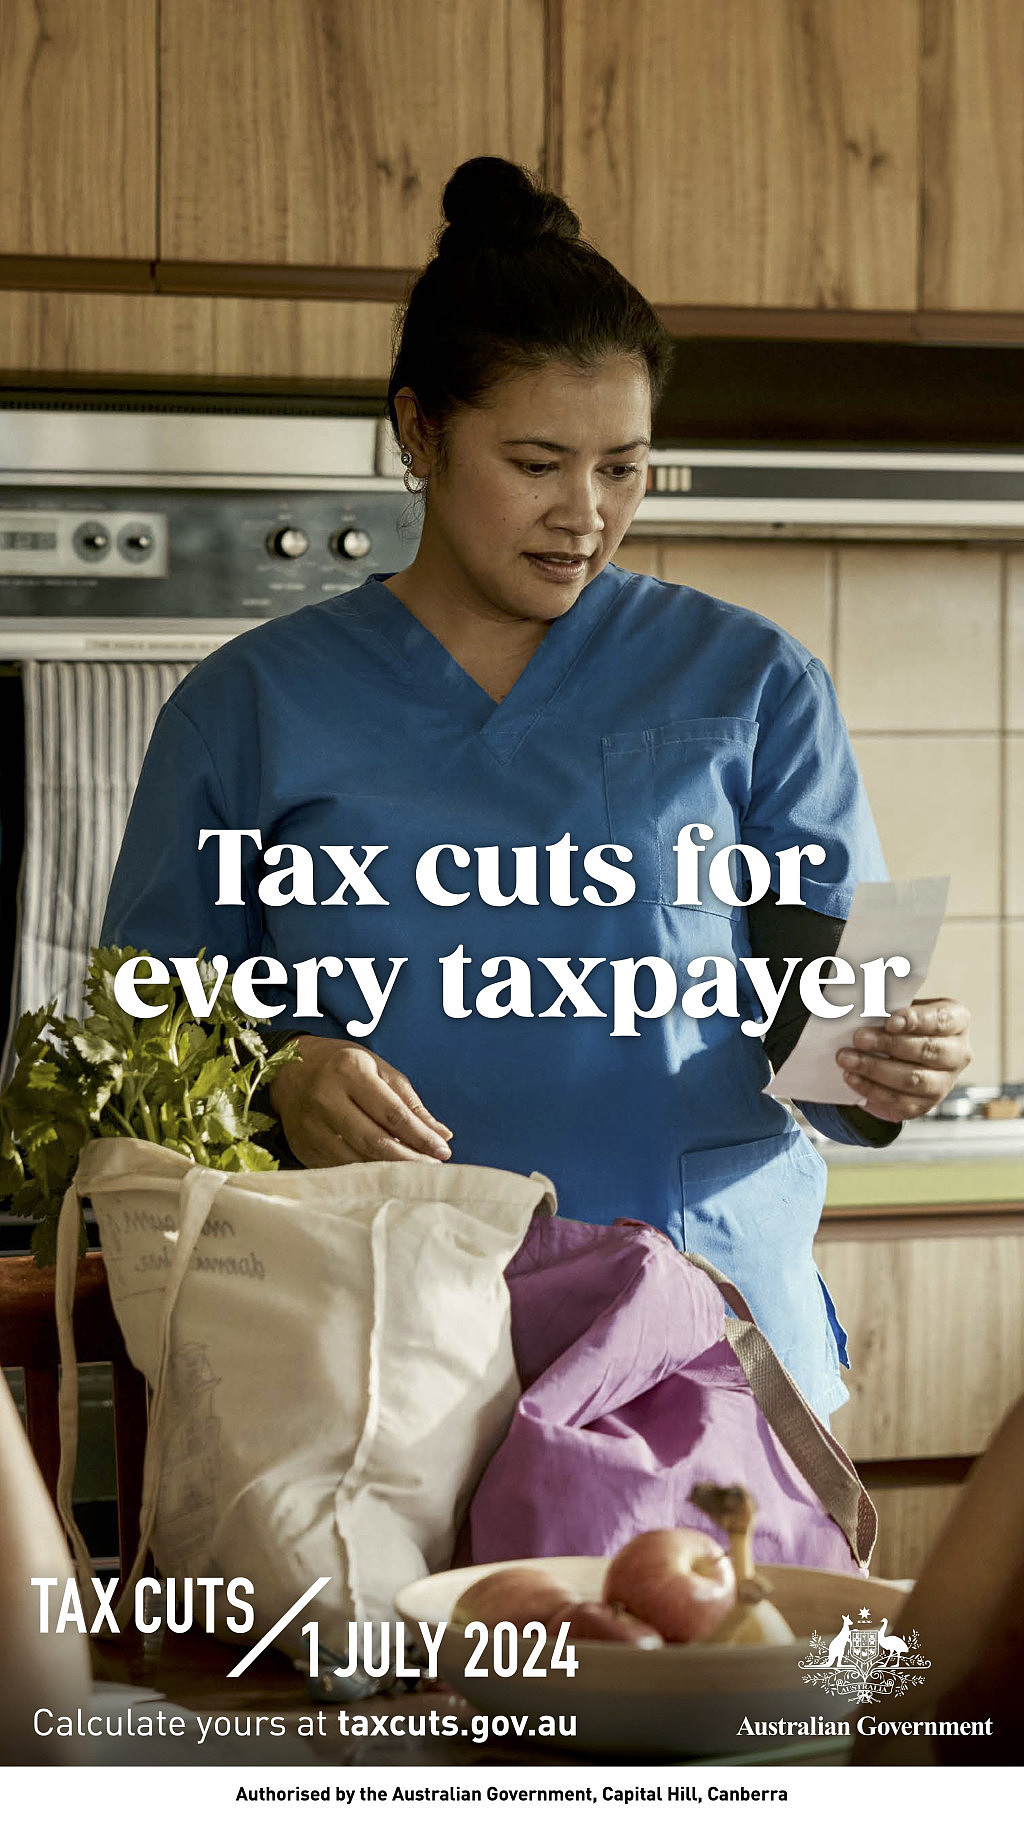 Tax Cuts Media Pitch Image.jpg,0